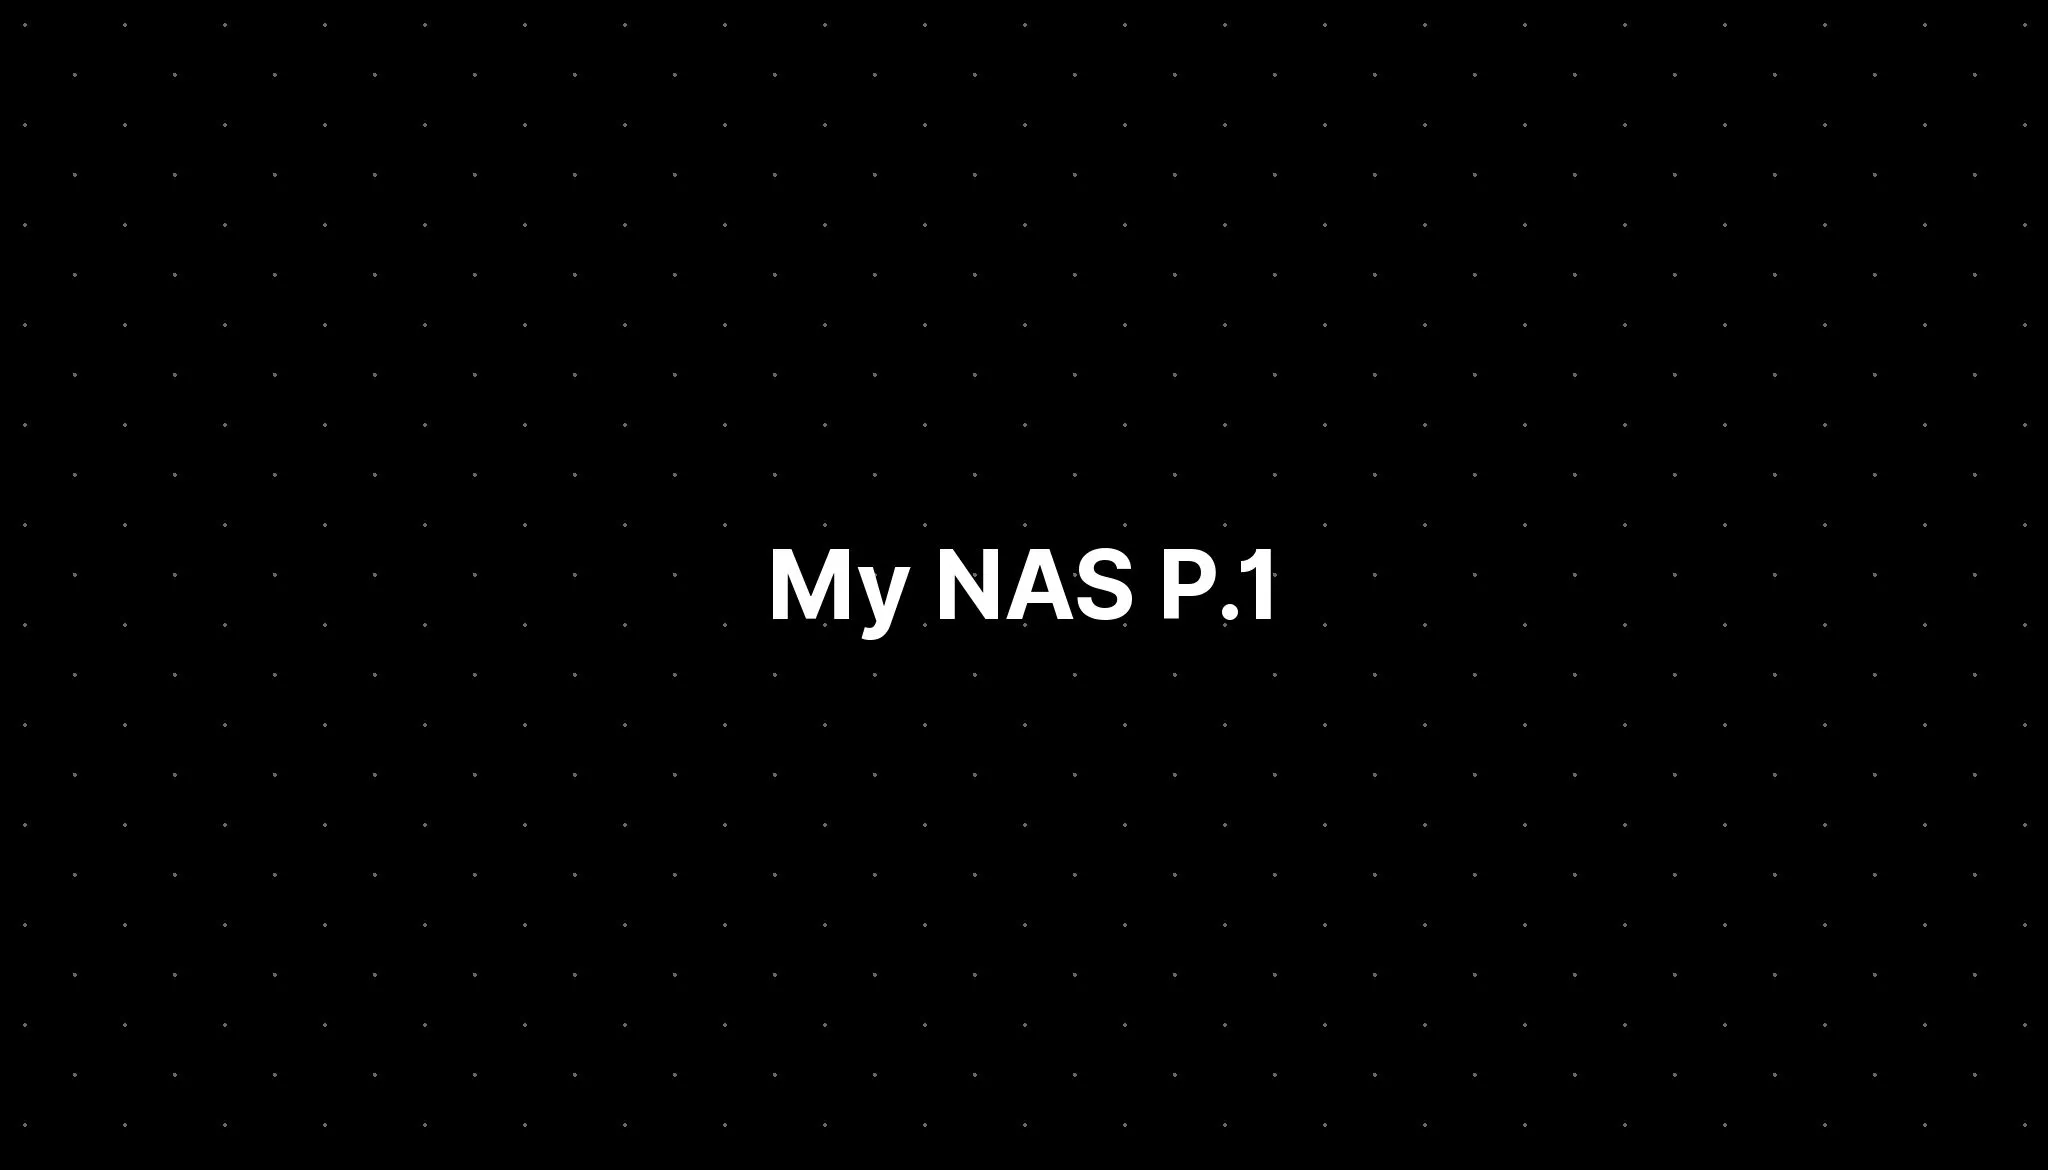 My NAS P.1